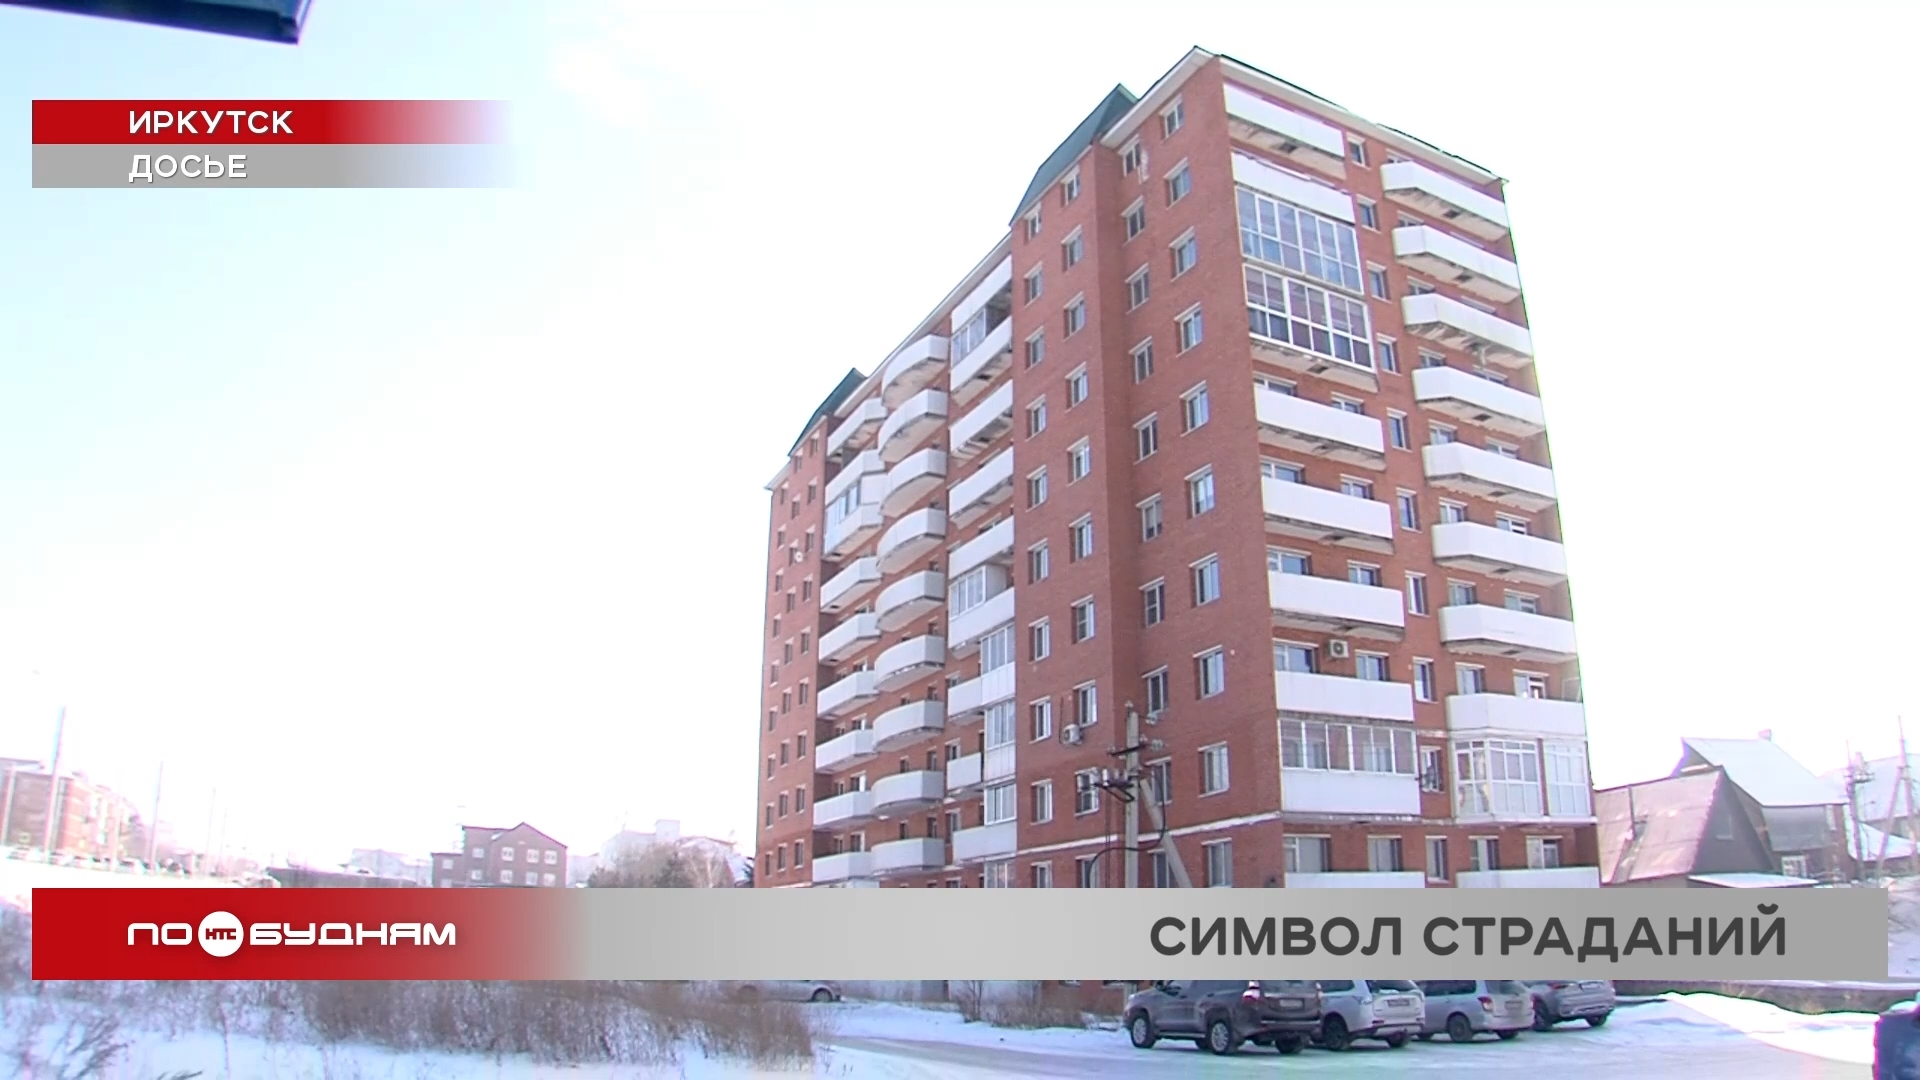 Постановление о выселение получили жители скандально известной многоэтажки на Пискунова в Иркутске